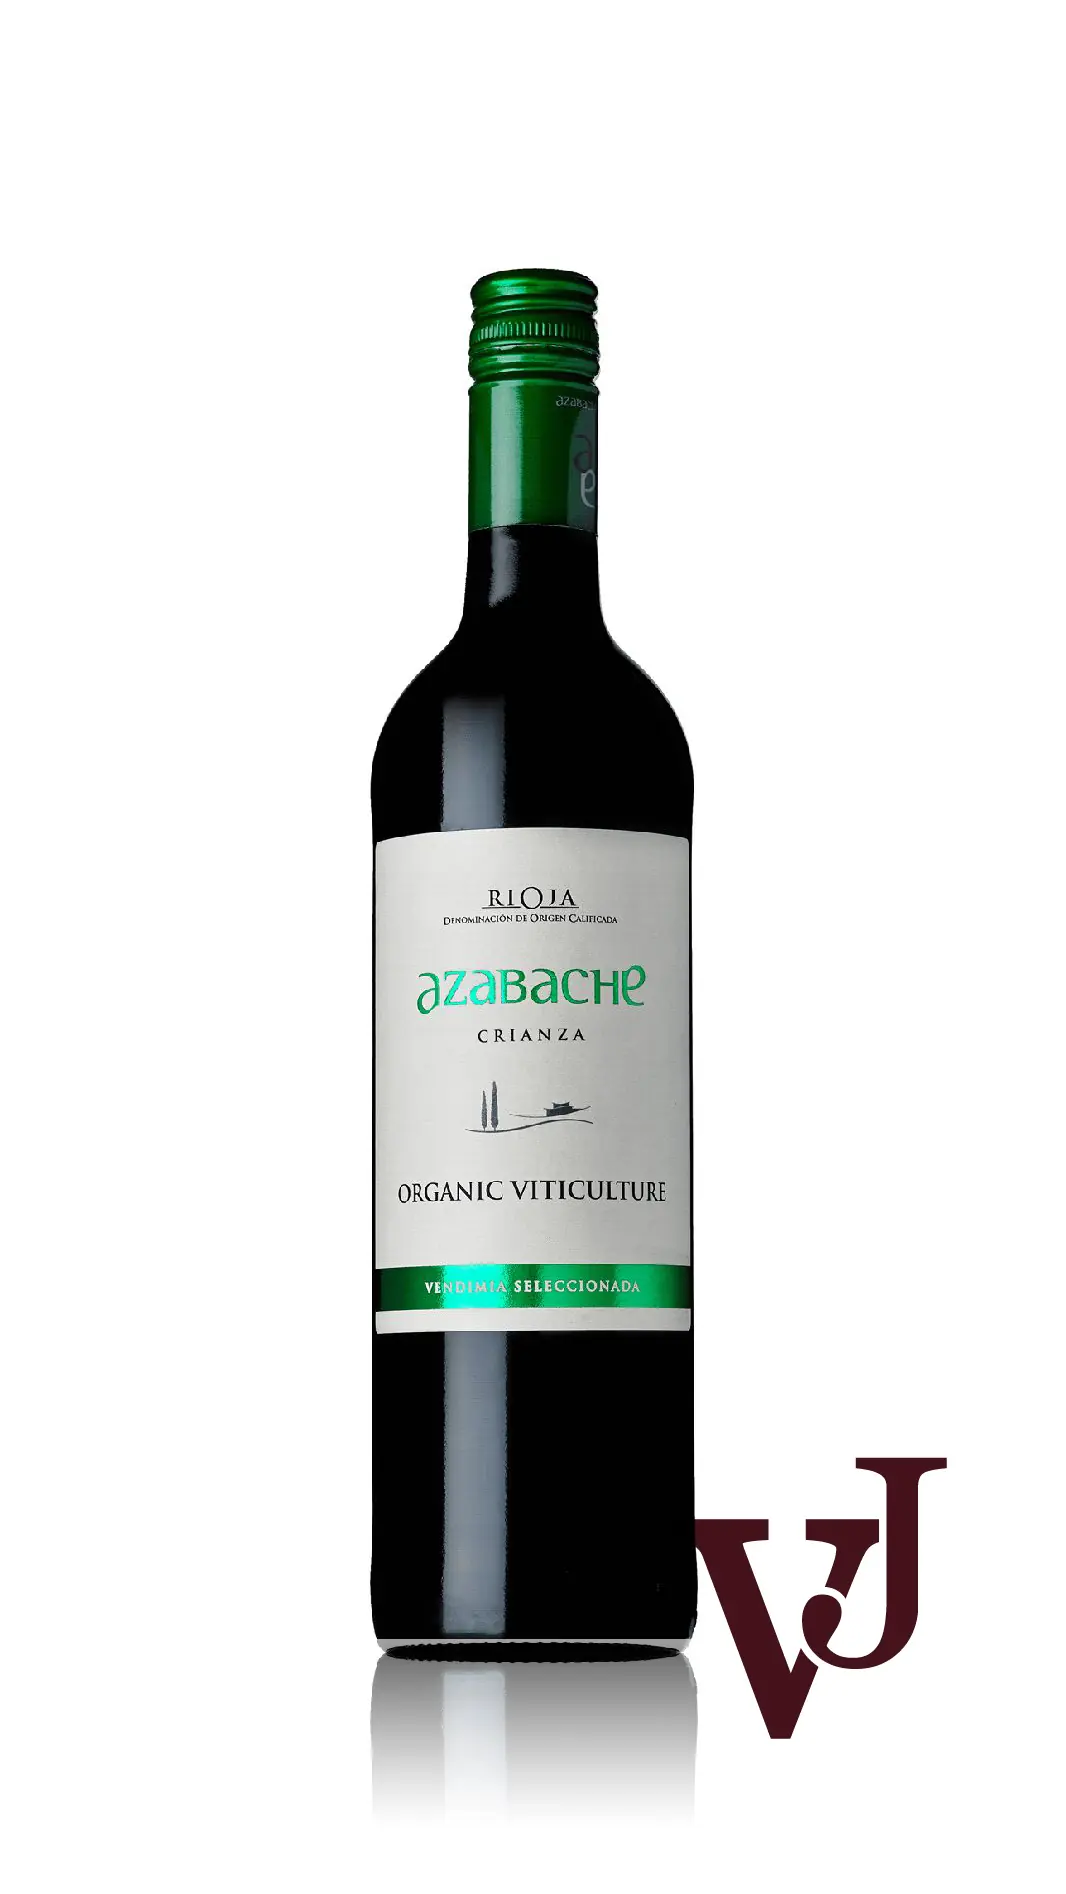 Rött Vin - Azabache Crianza artikel nummer 270801 från producenten Viñedos de Aldeanueva från området Spanien - Vinjournalen.se